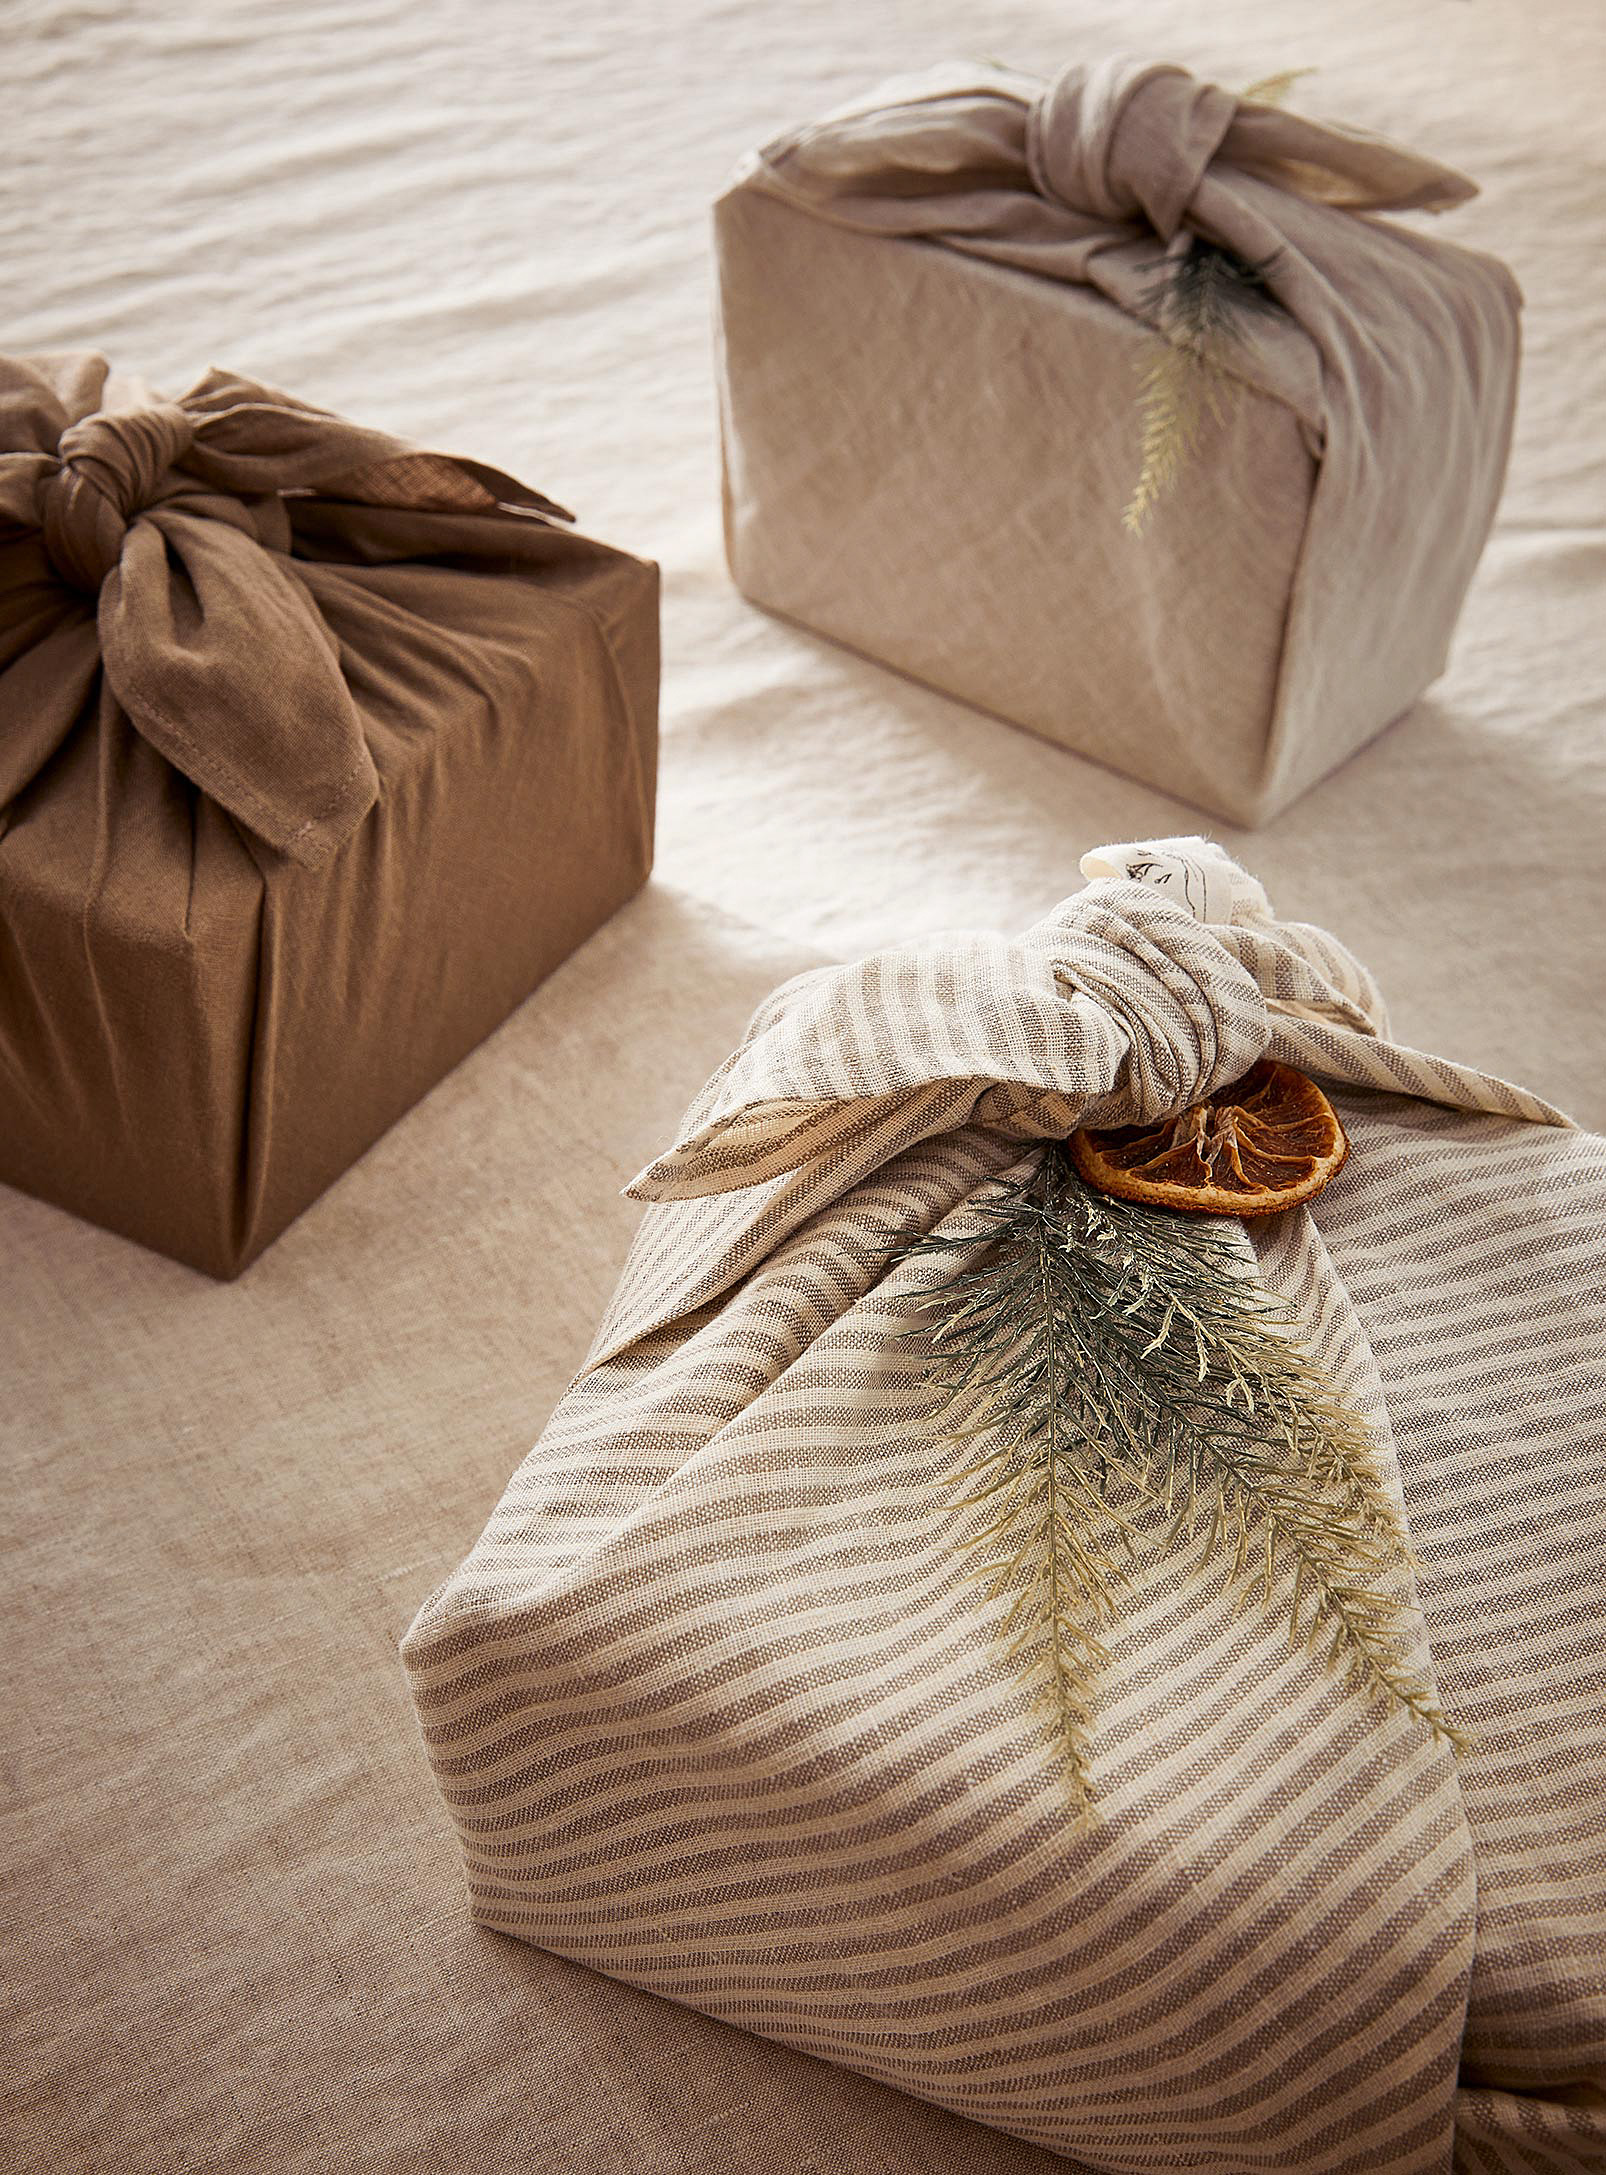 Confetti Mill Neutral Tones Linen Furoshiki Wrapping Trio In White